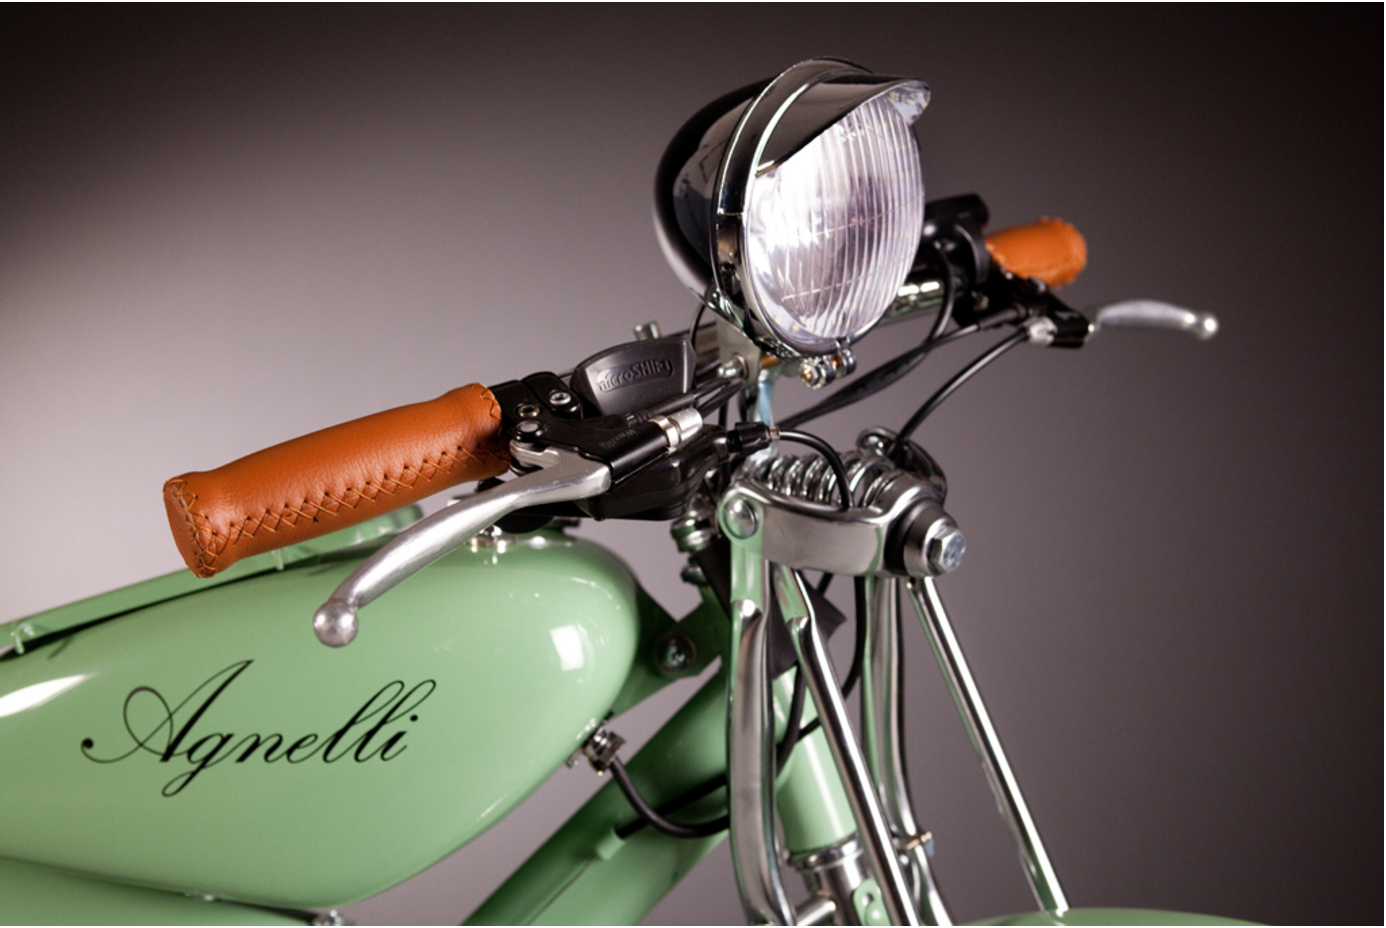 agnelli-milano-bici-baya-iyi-bisiklet-5